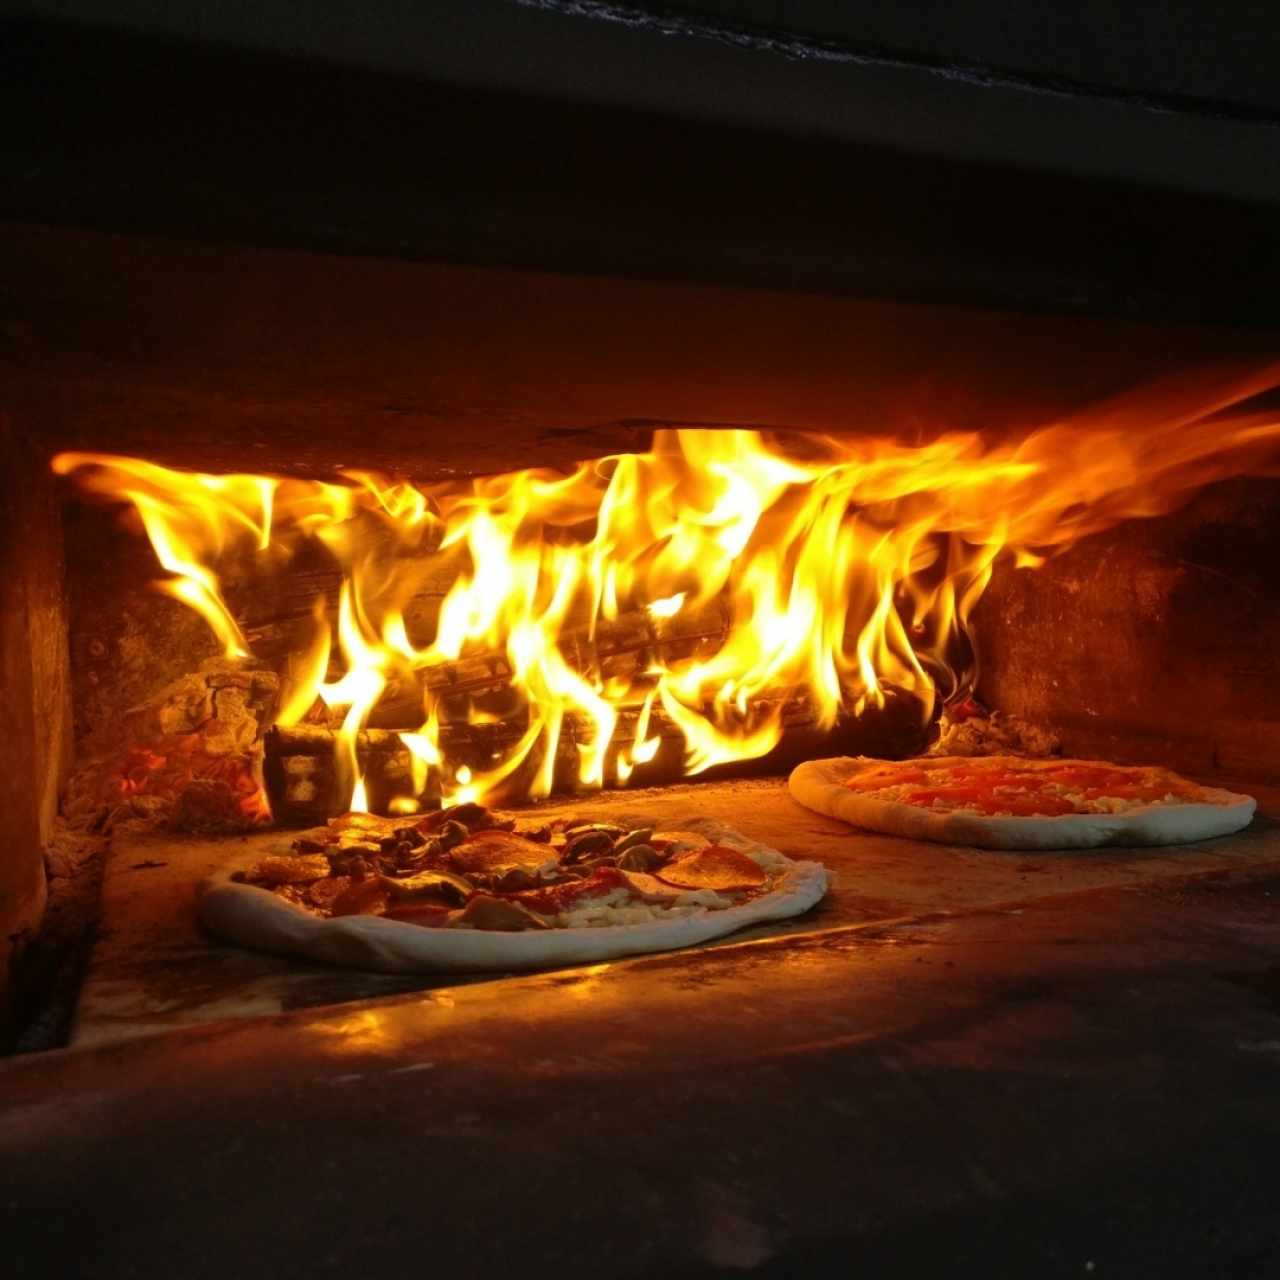 pizzas artesanales en horno de leña